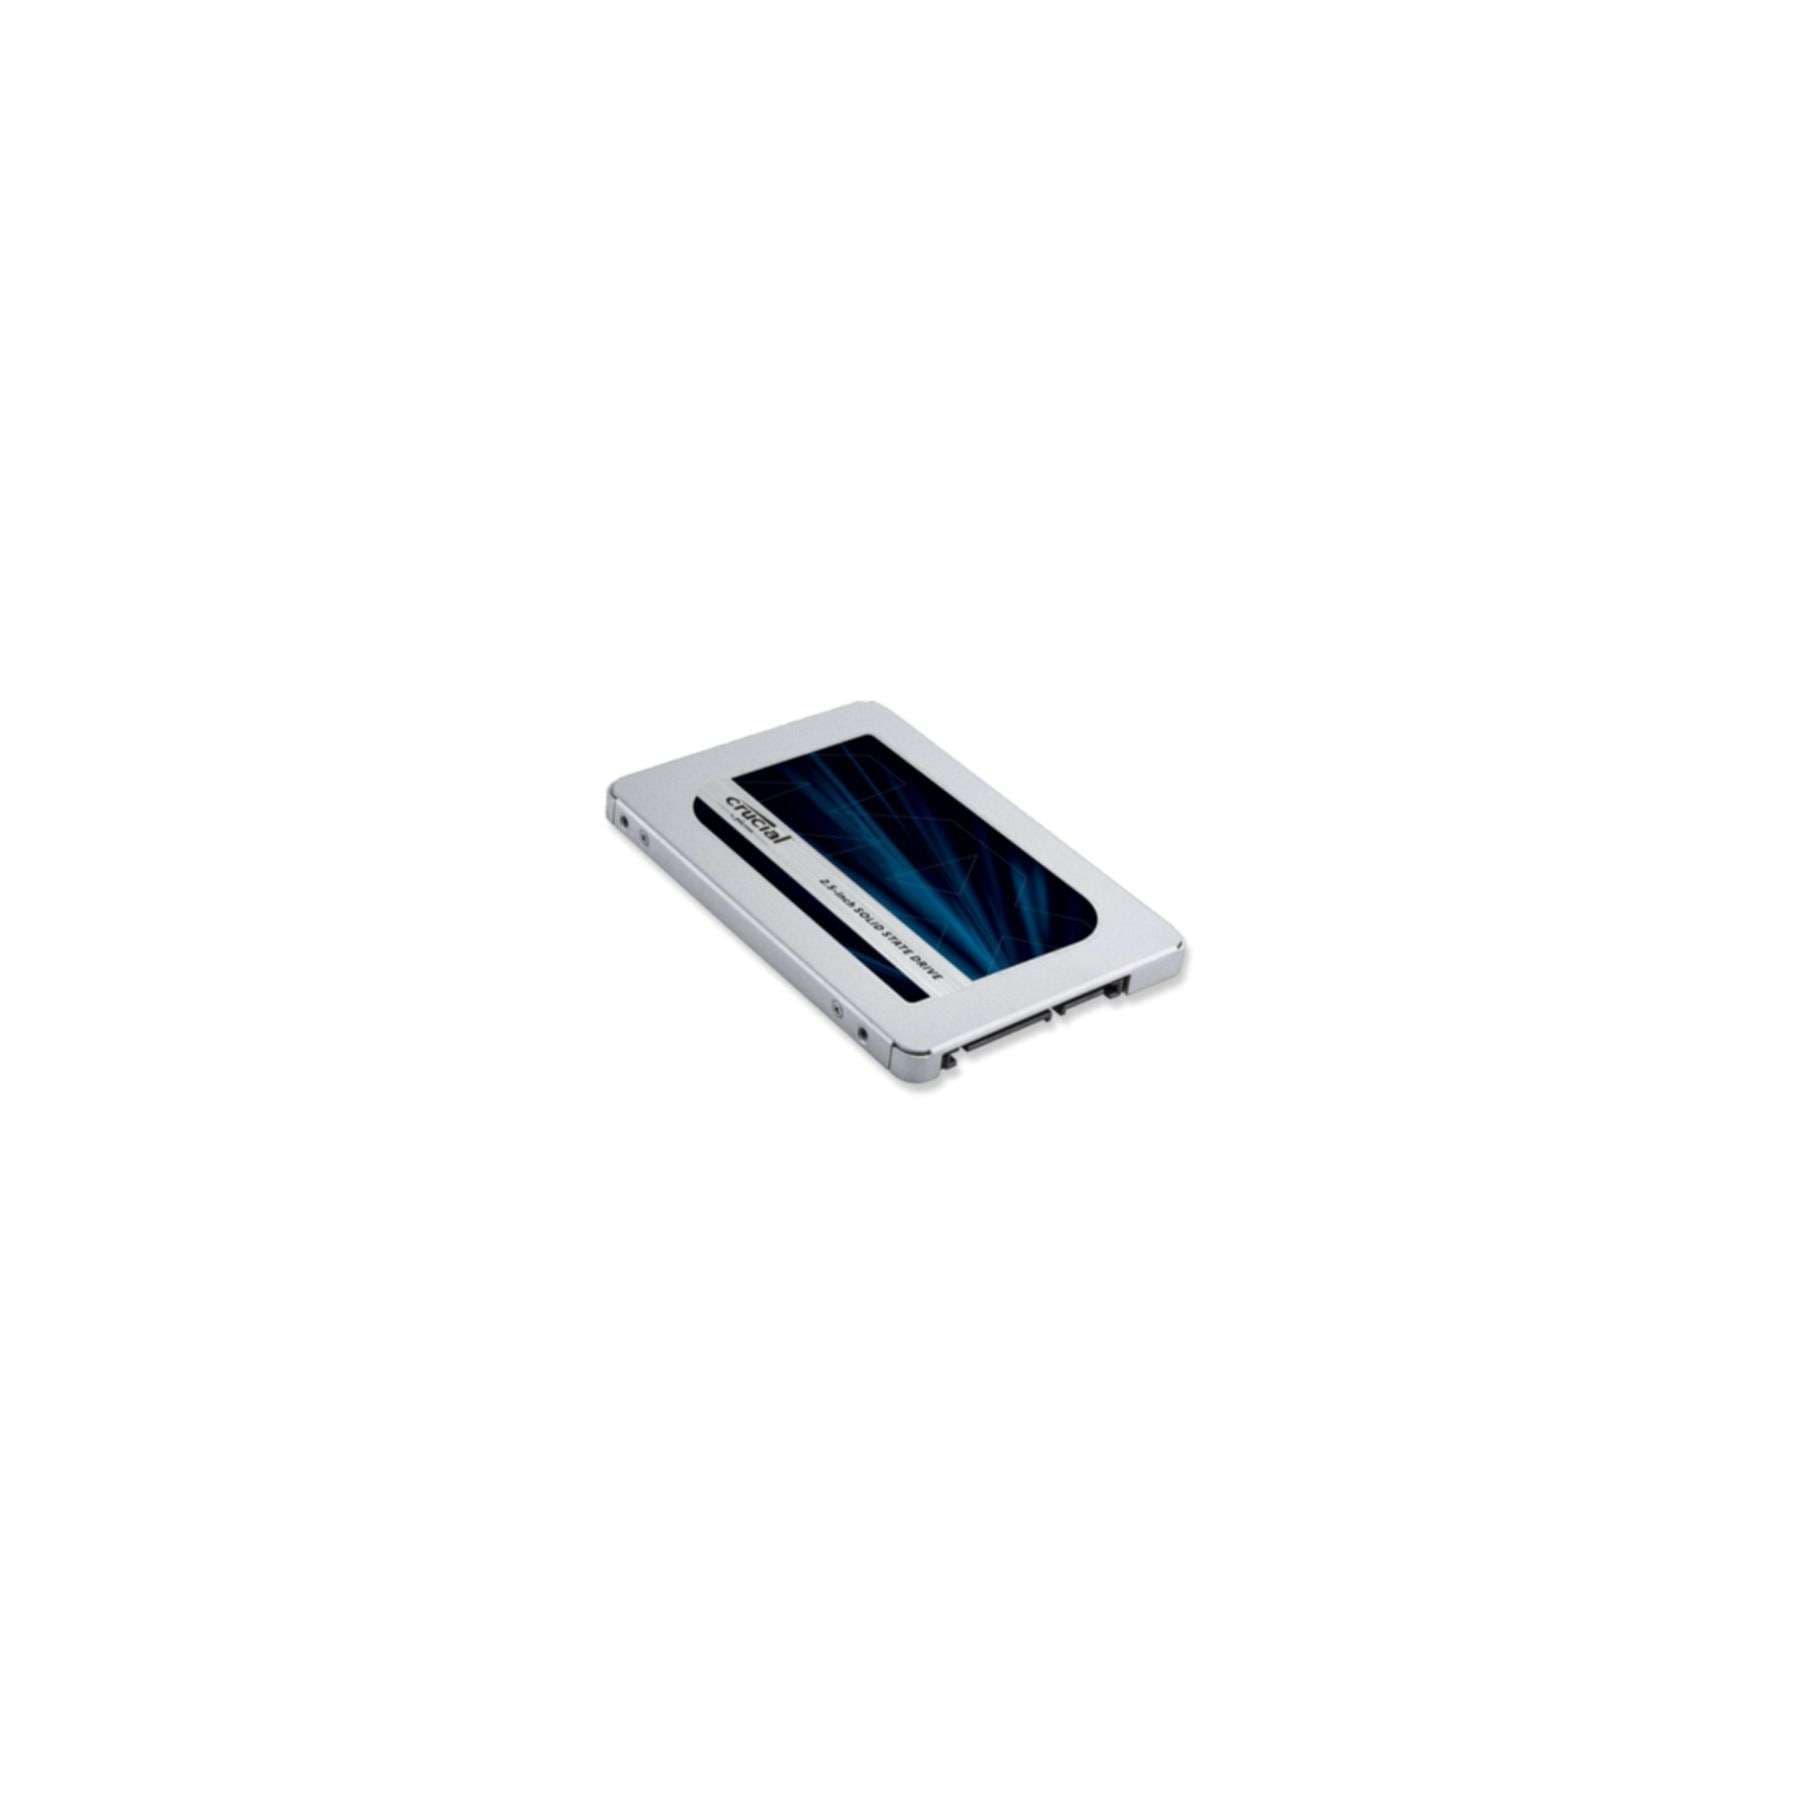 Crucial Interne SSD »MX500«